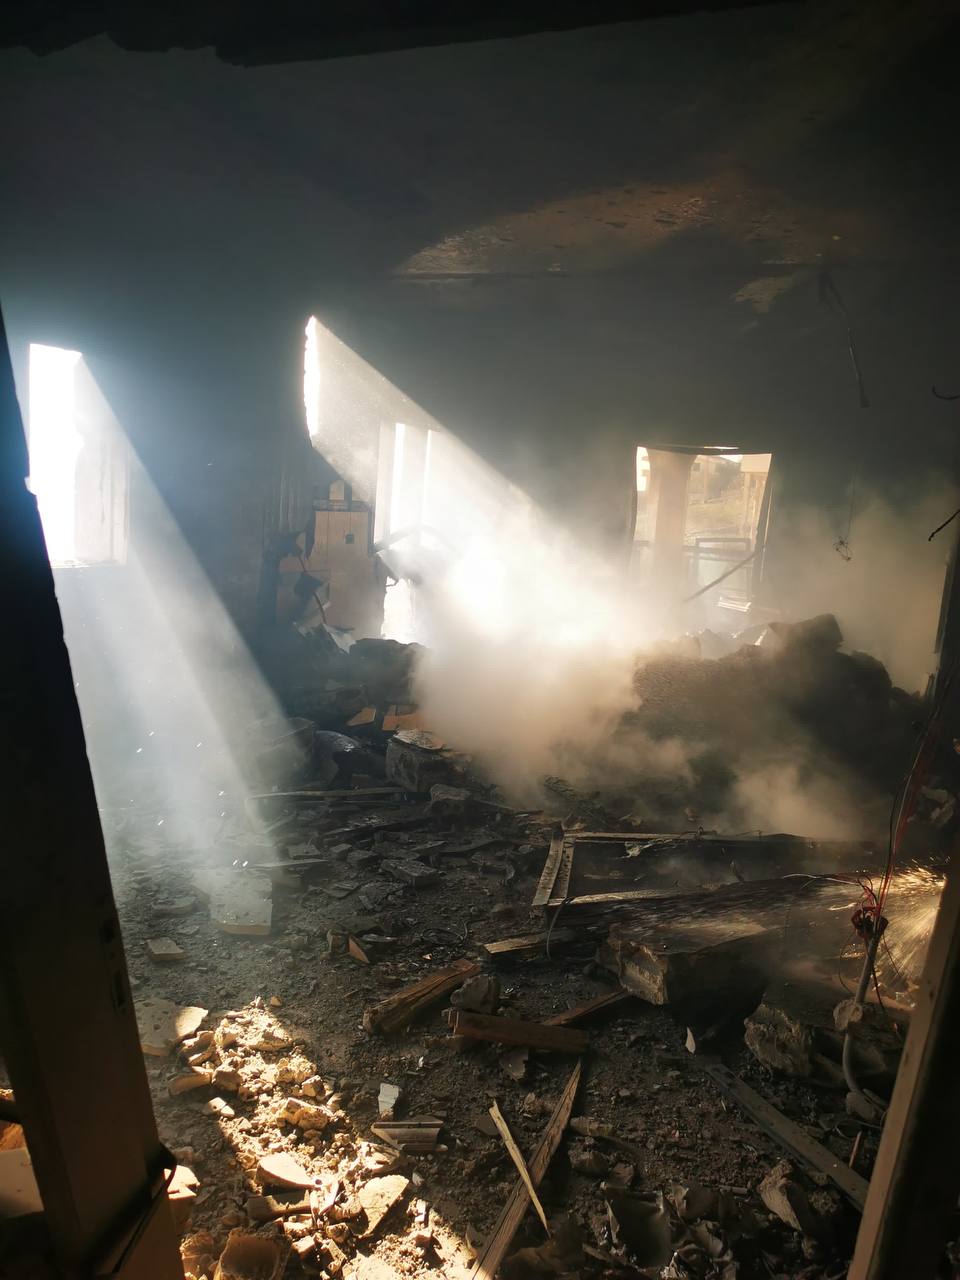 بالفيديو - لحظة استهداف منزل في مارون الراس واندلاع النيران بداخله!